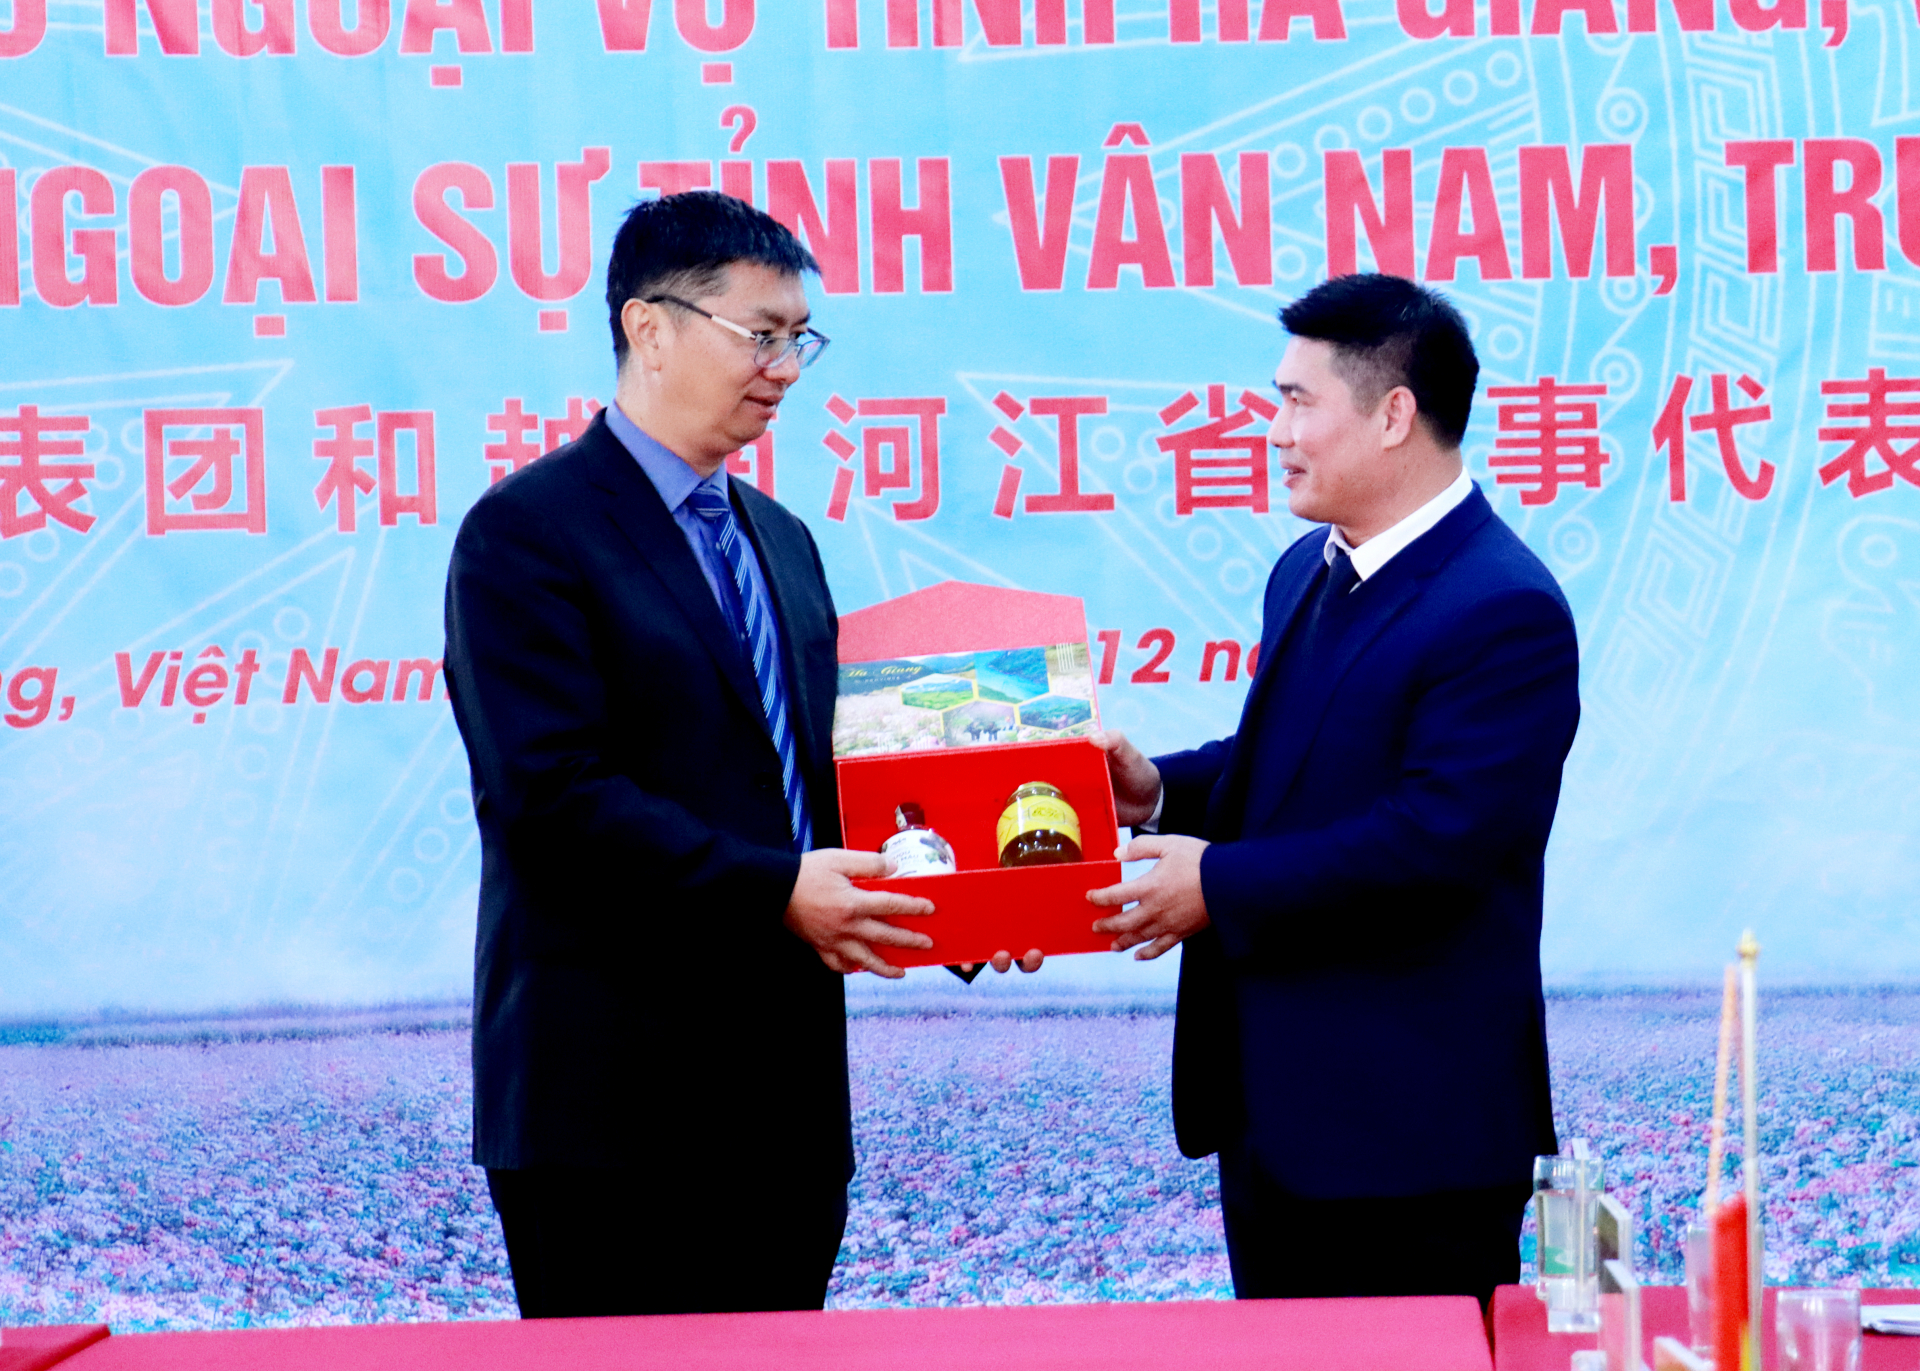 Lãnh đạo Sở Ngoại vụ tỉnh Hà Giang tặng quà cho lãnh đạo Văn phòng Ngoại sự tỉnh Vân Nam.